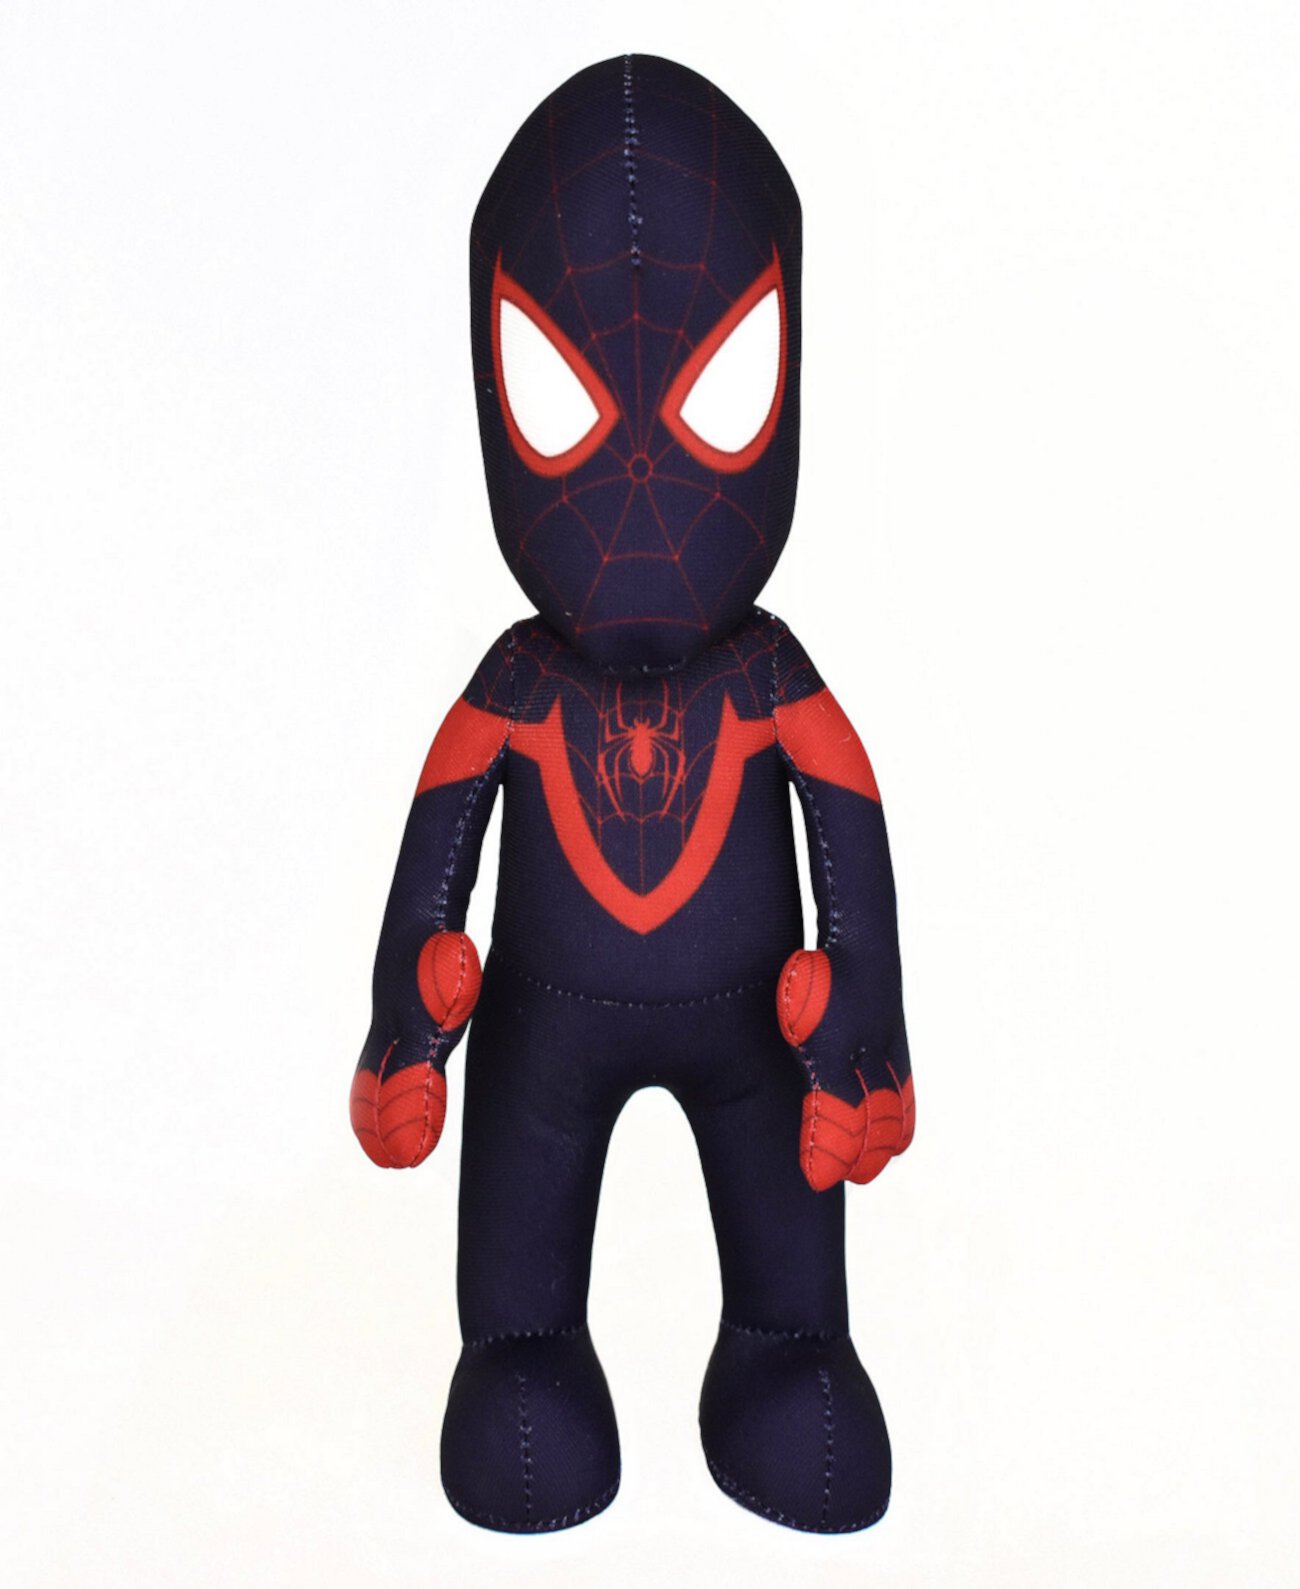 Плюшевая фигурка Человека-паука Майлза Моралеса Marvel's — супергерой для игры или демонстрации, 10 дюймов Bleacher Creatures